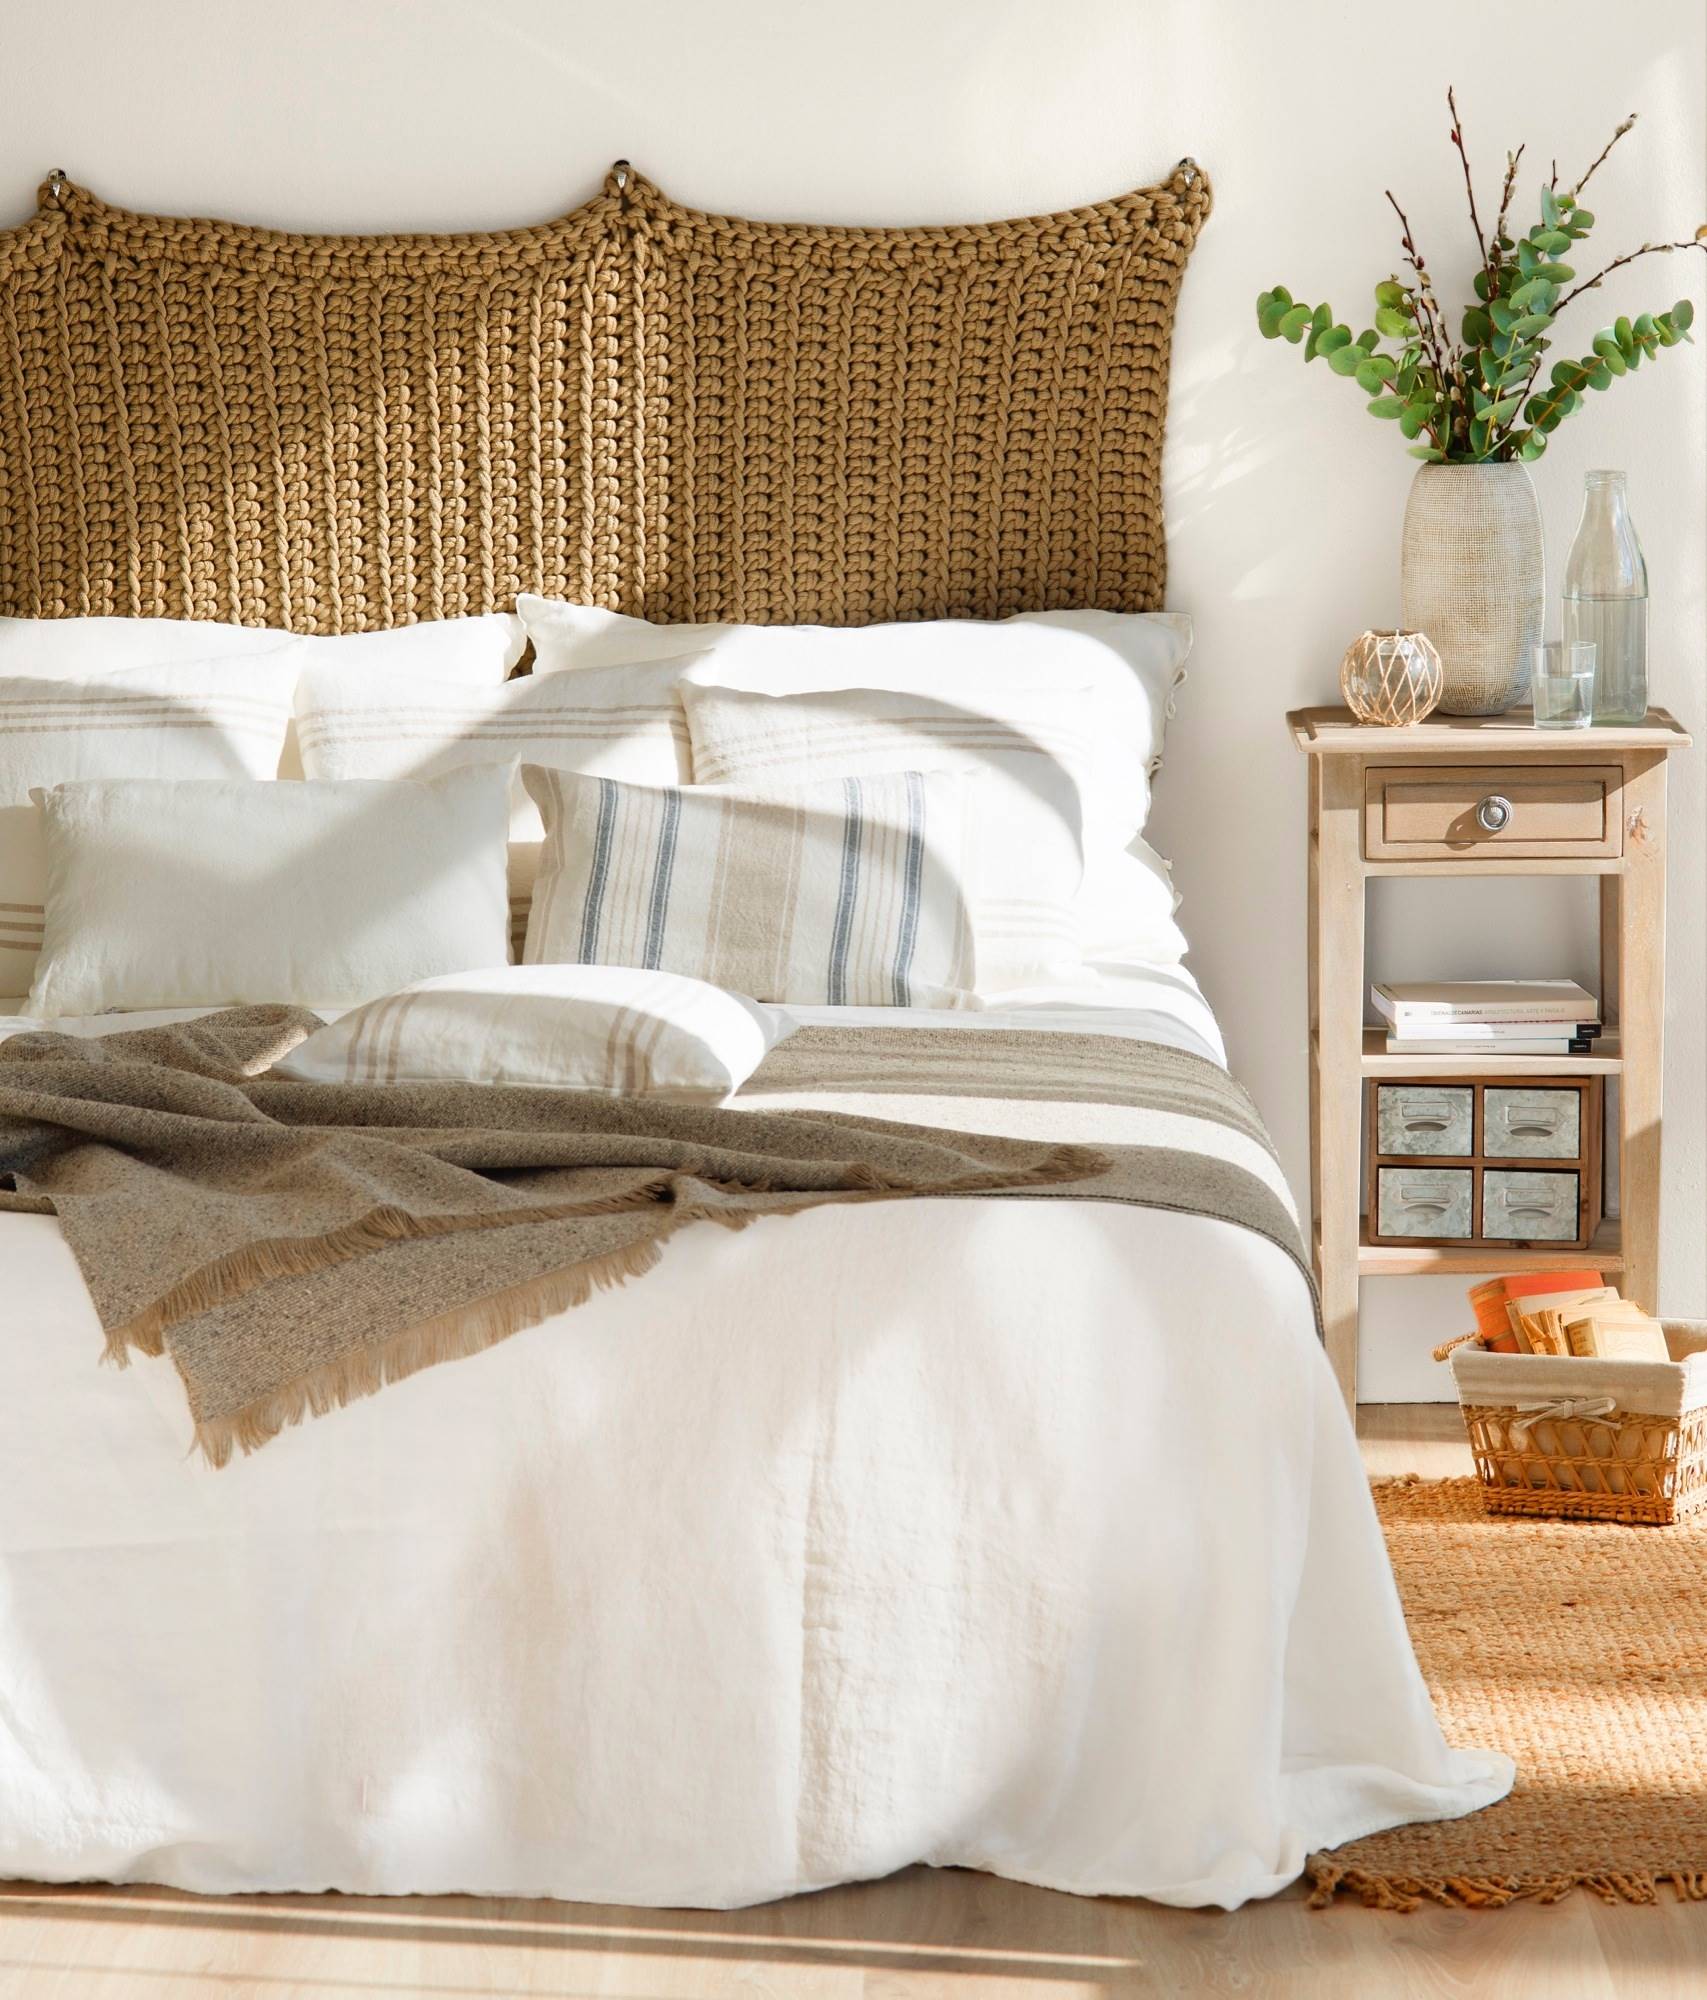 Dormitorio en blanco con cabecero de crochet.